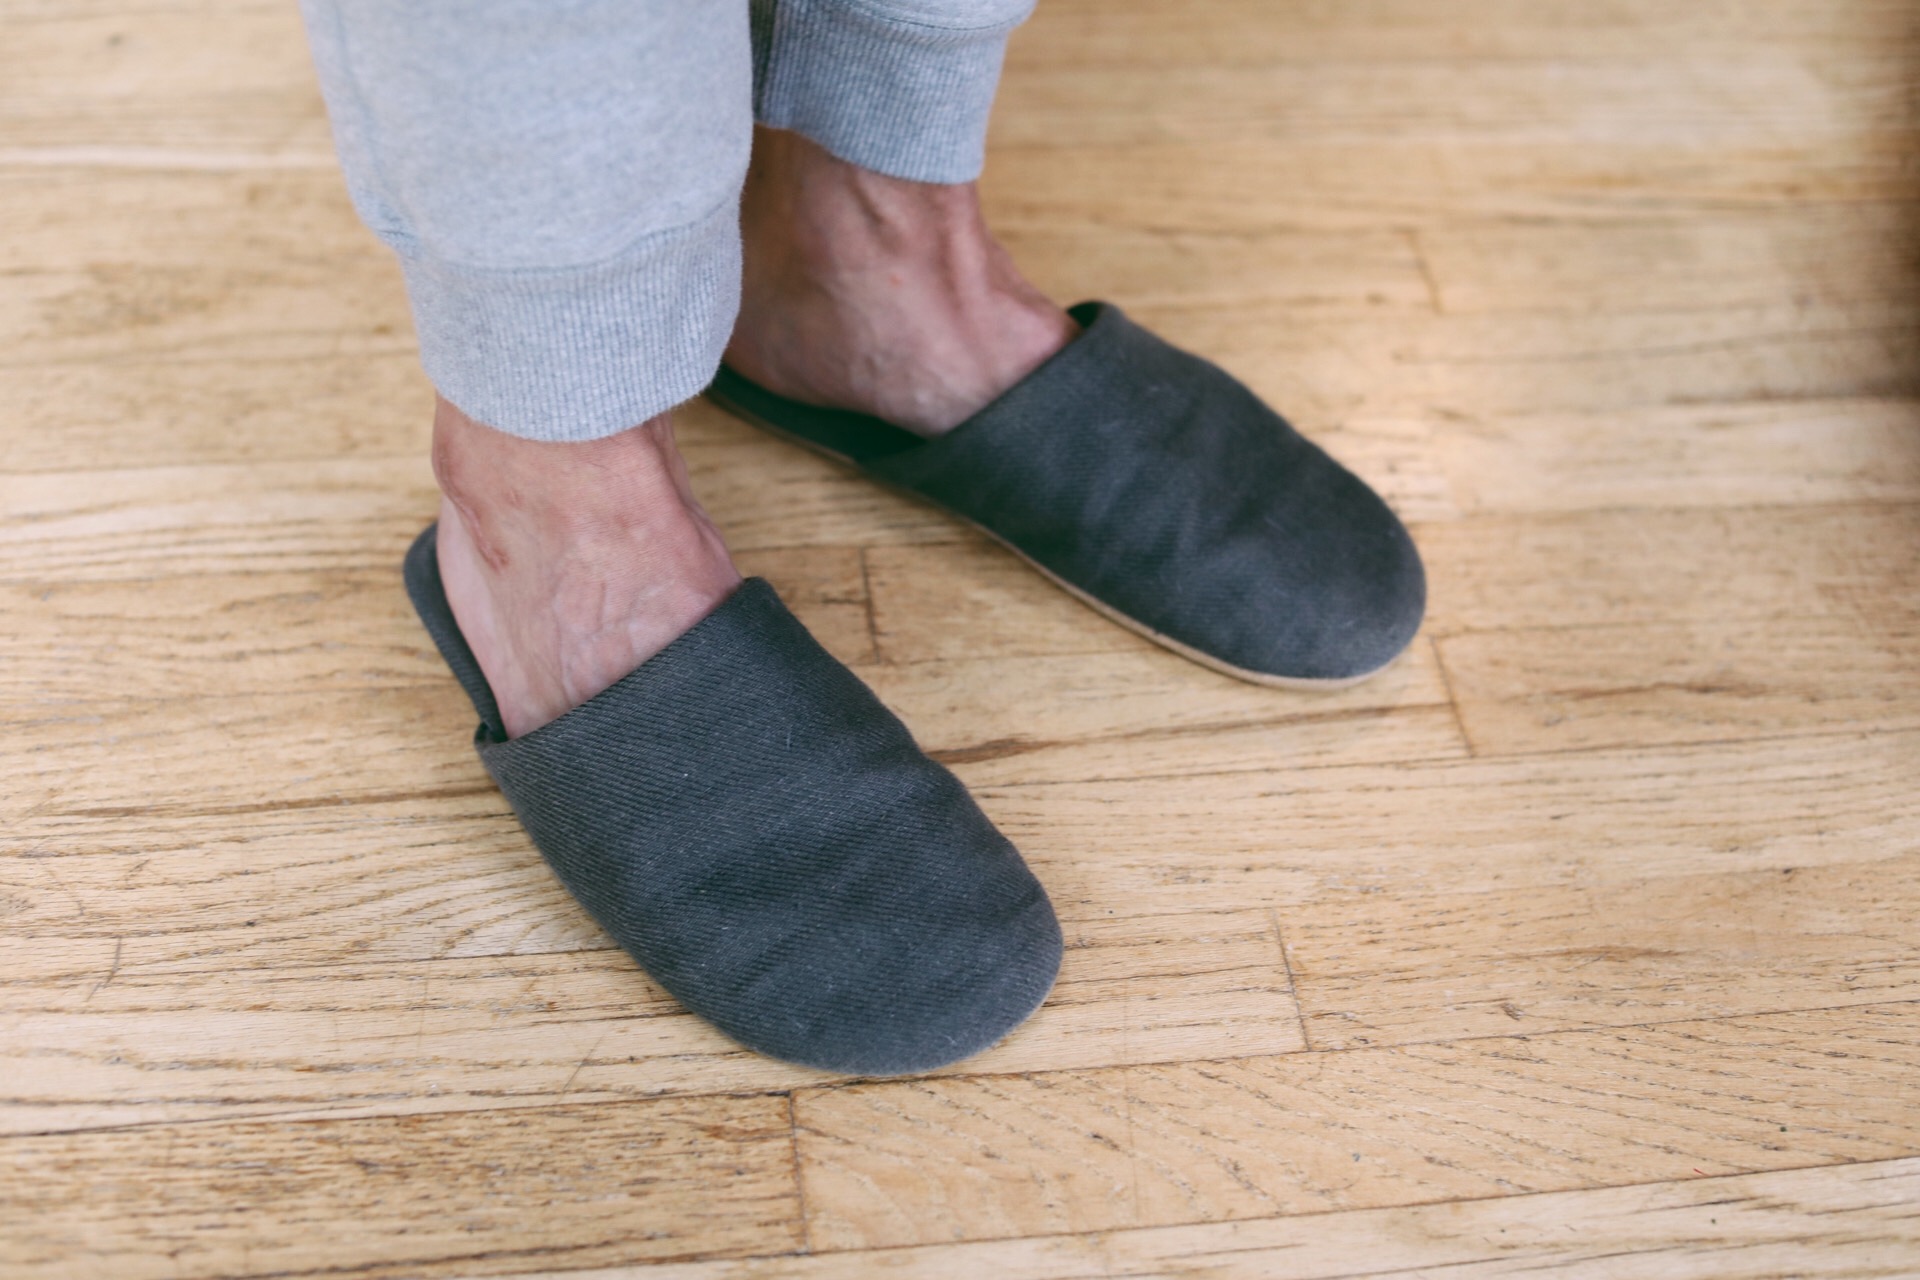 muji indoor slippers